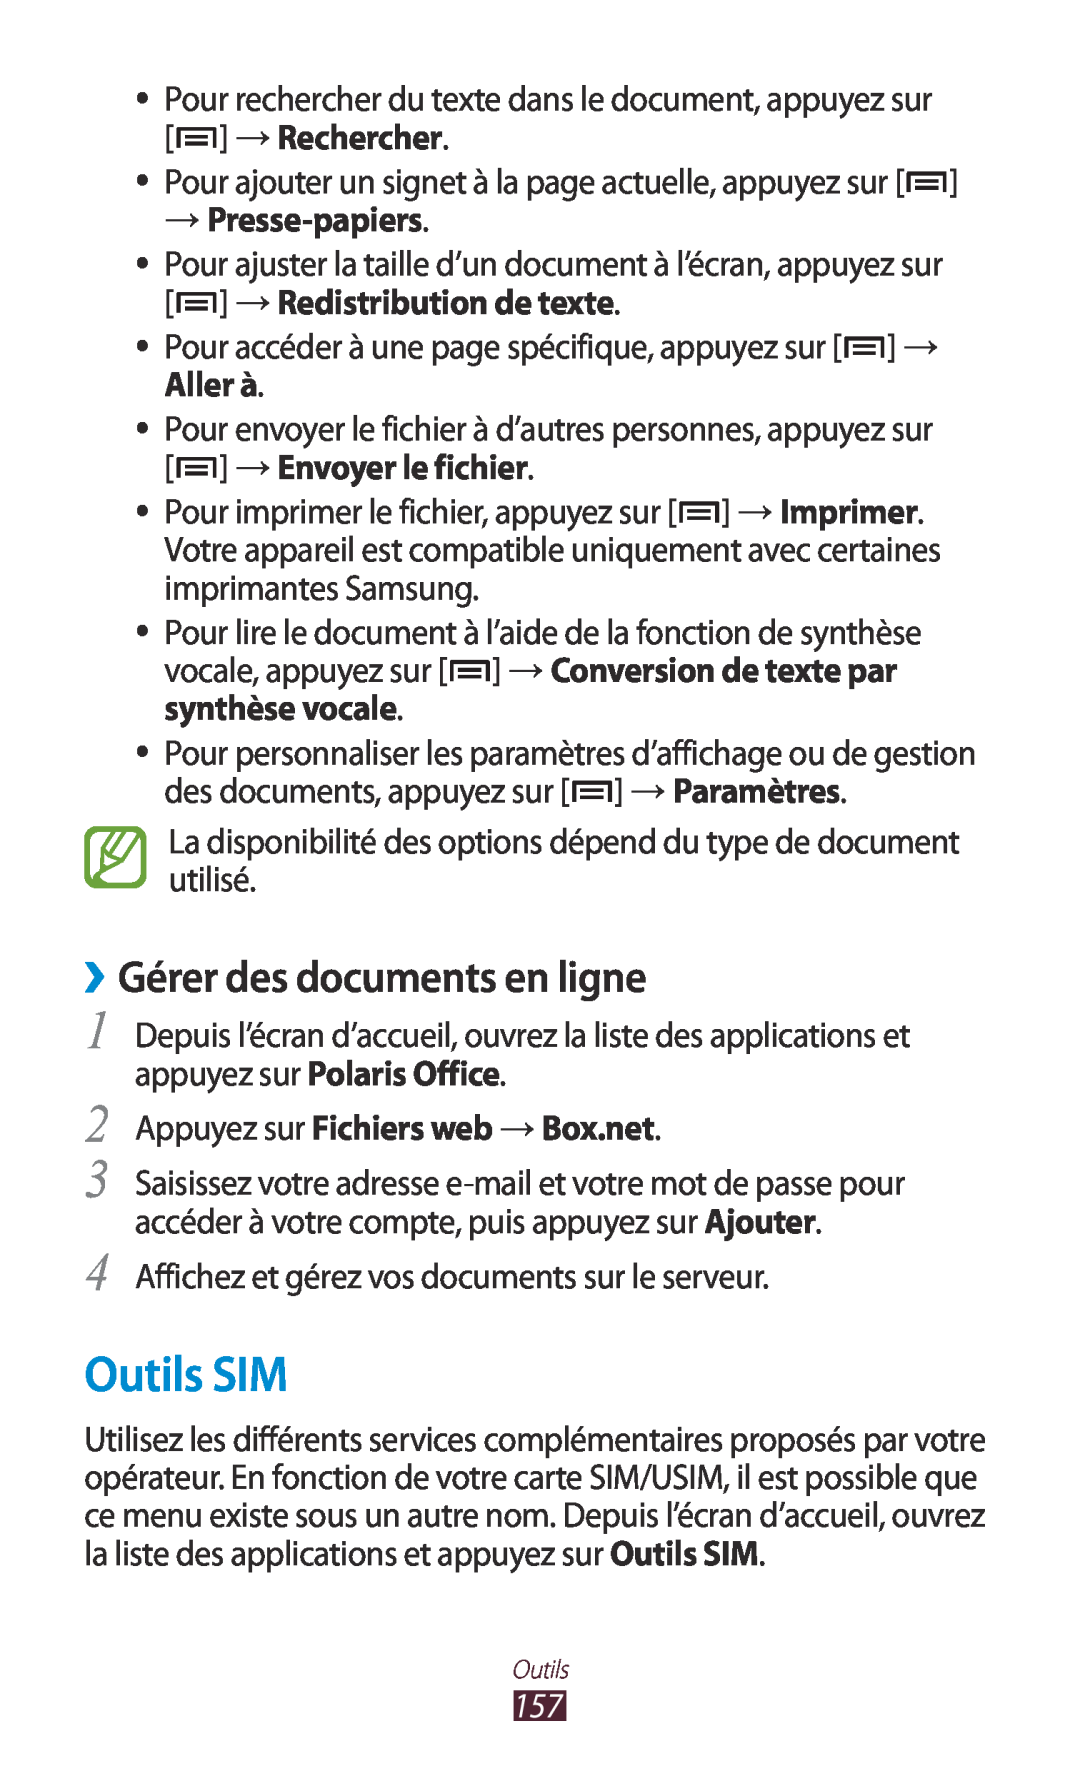 Samsung GT-N7000ZIEXEF Outils SIM, ››Gérer des documents en ligne, → Presse-papiers, Appuyez sur Fichiers web → Box.net 